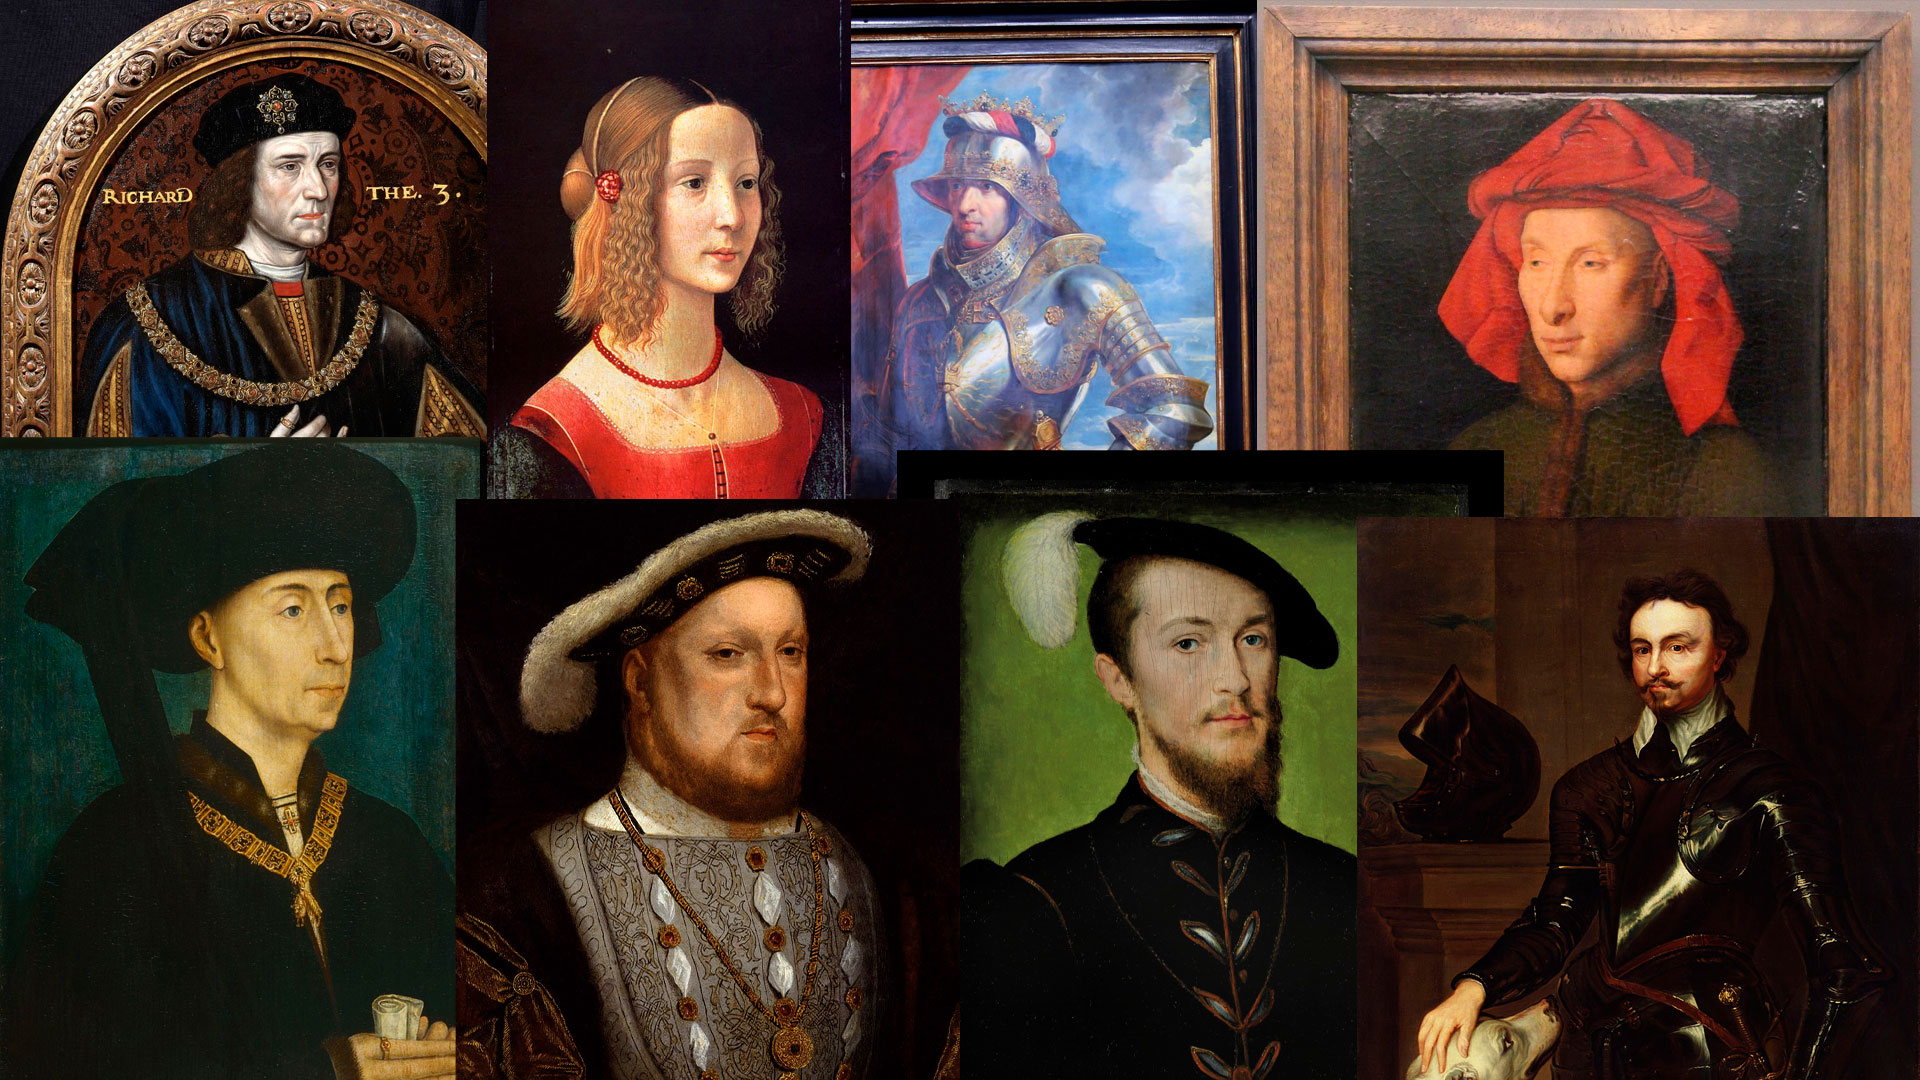 на заглавной объединены восемь портретов деятелей средневековья и раннего возрождения